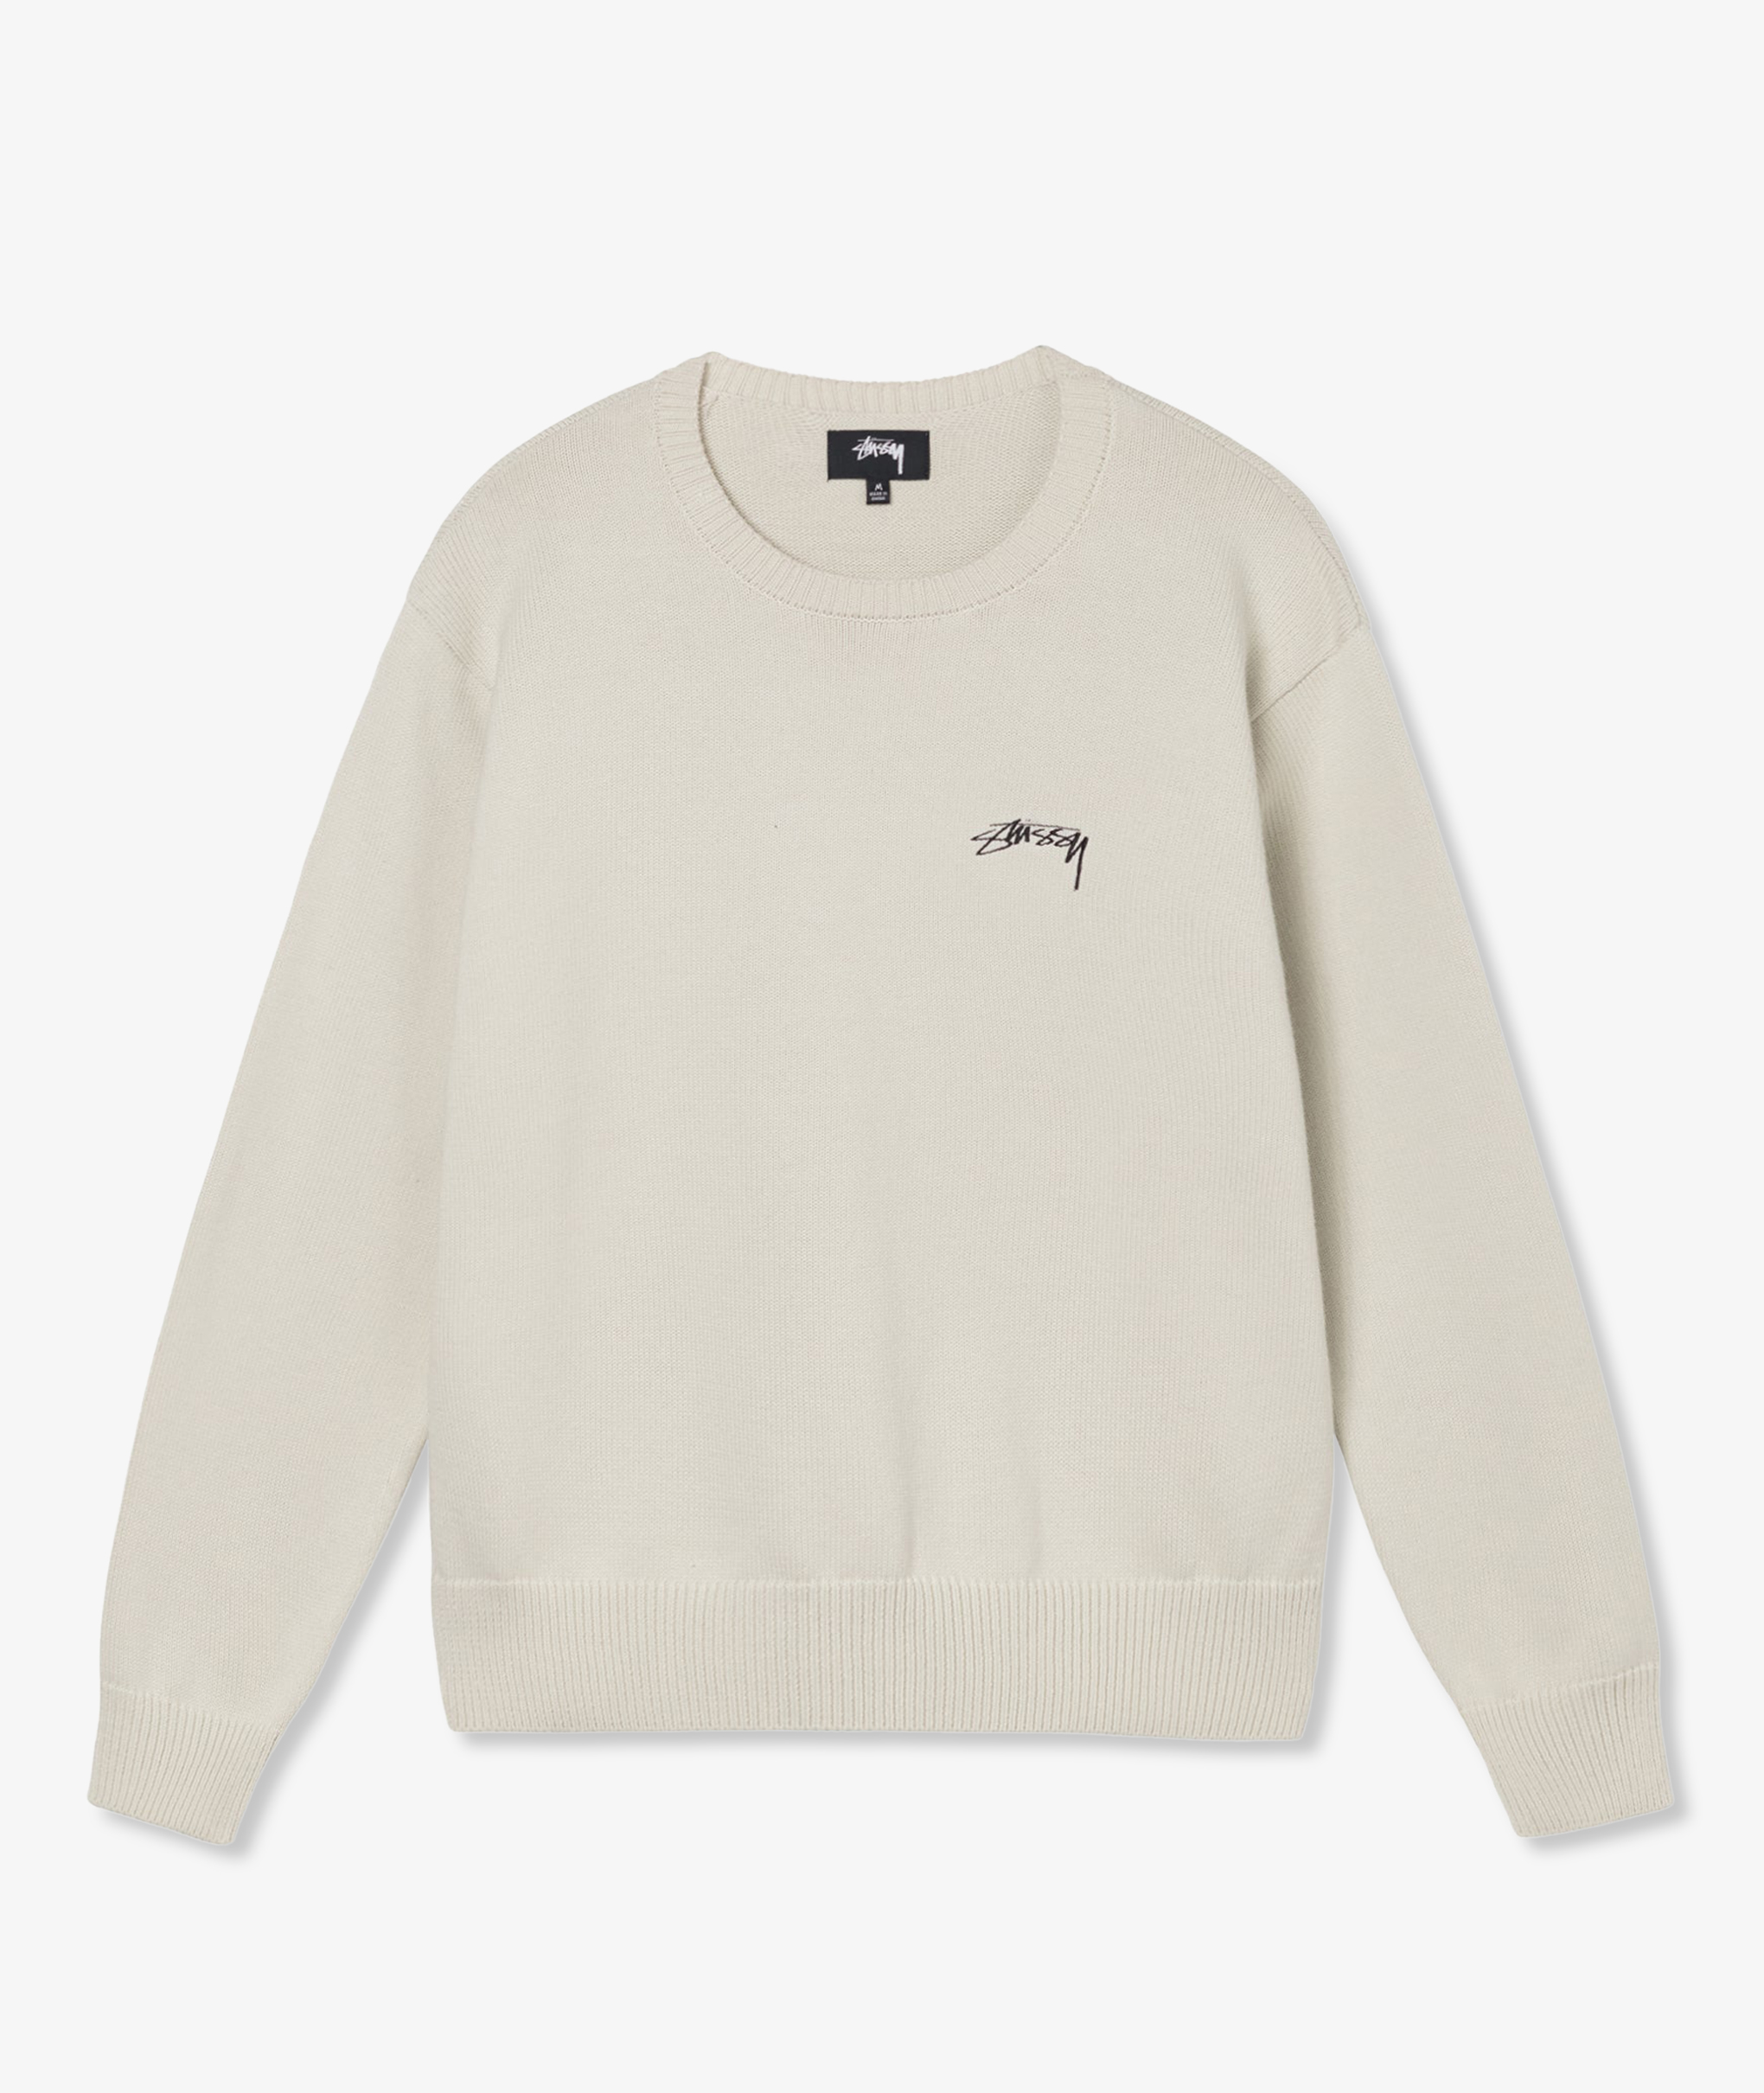 Stussy 22fw Care Label Sweaterニット セーター L - ニット/セーター